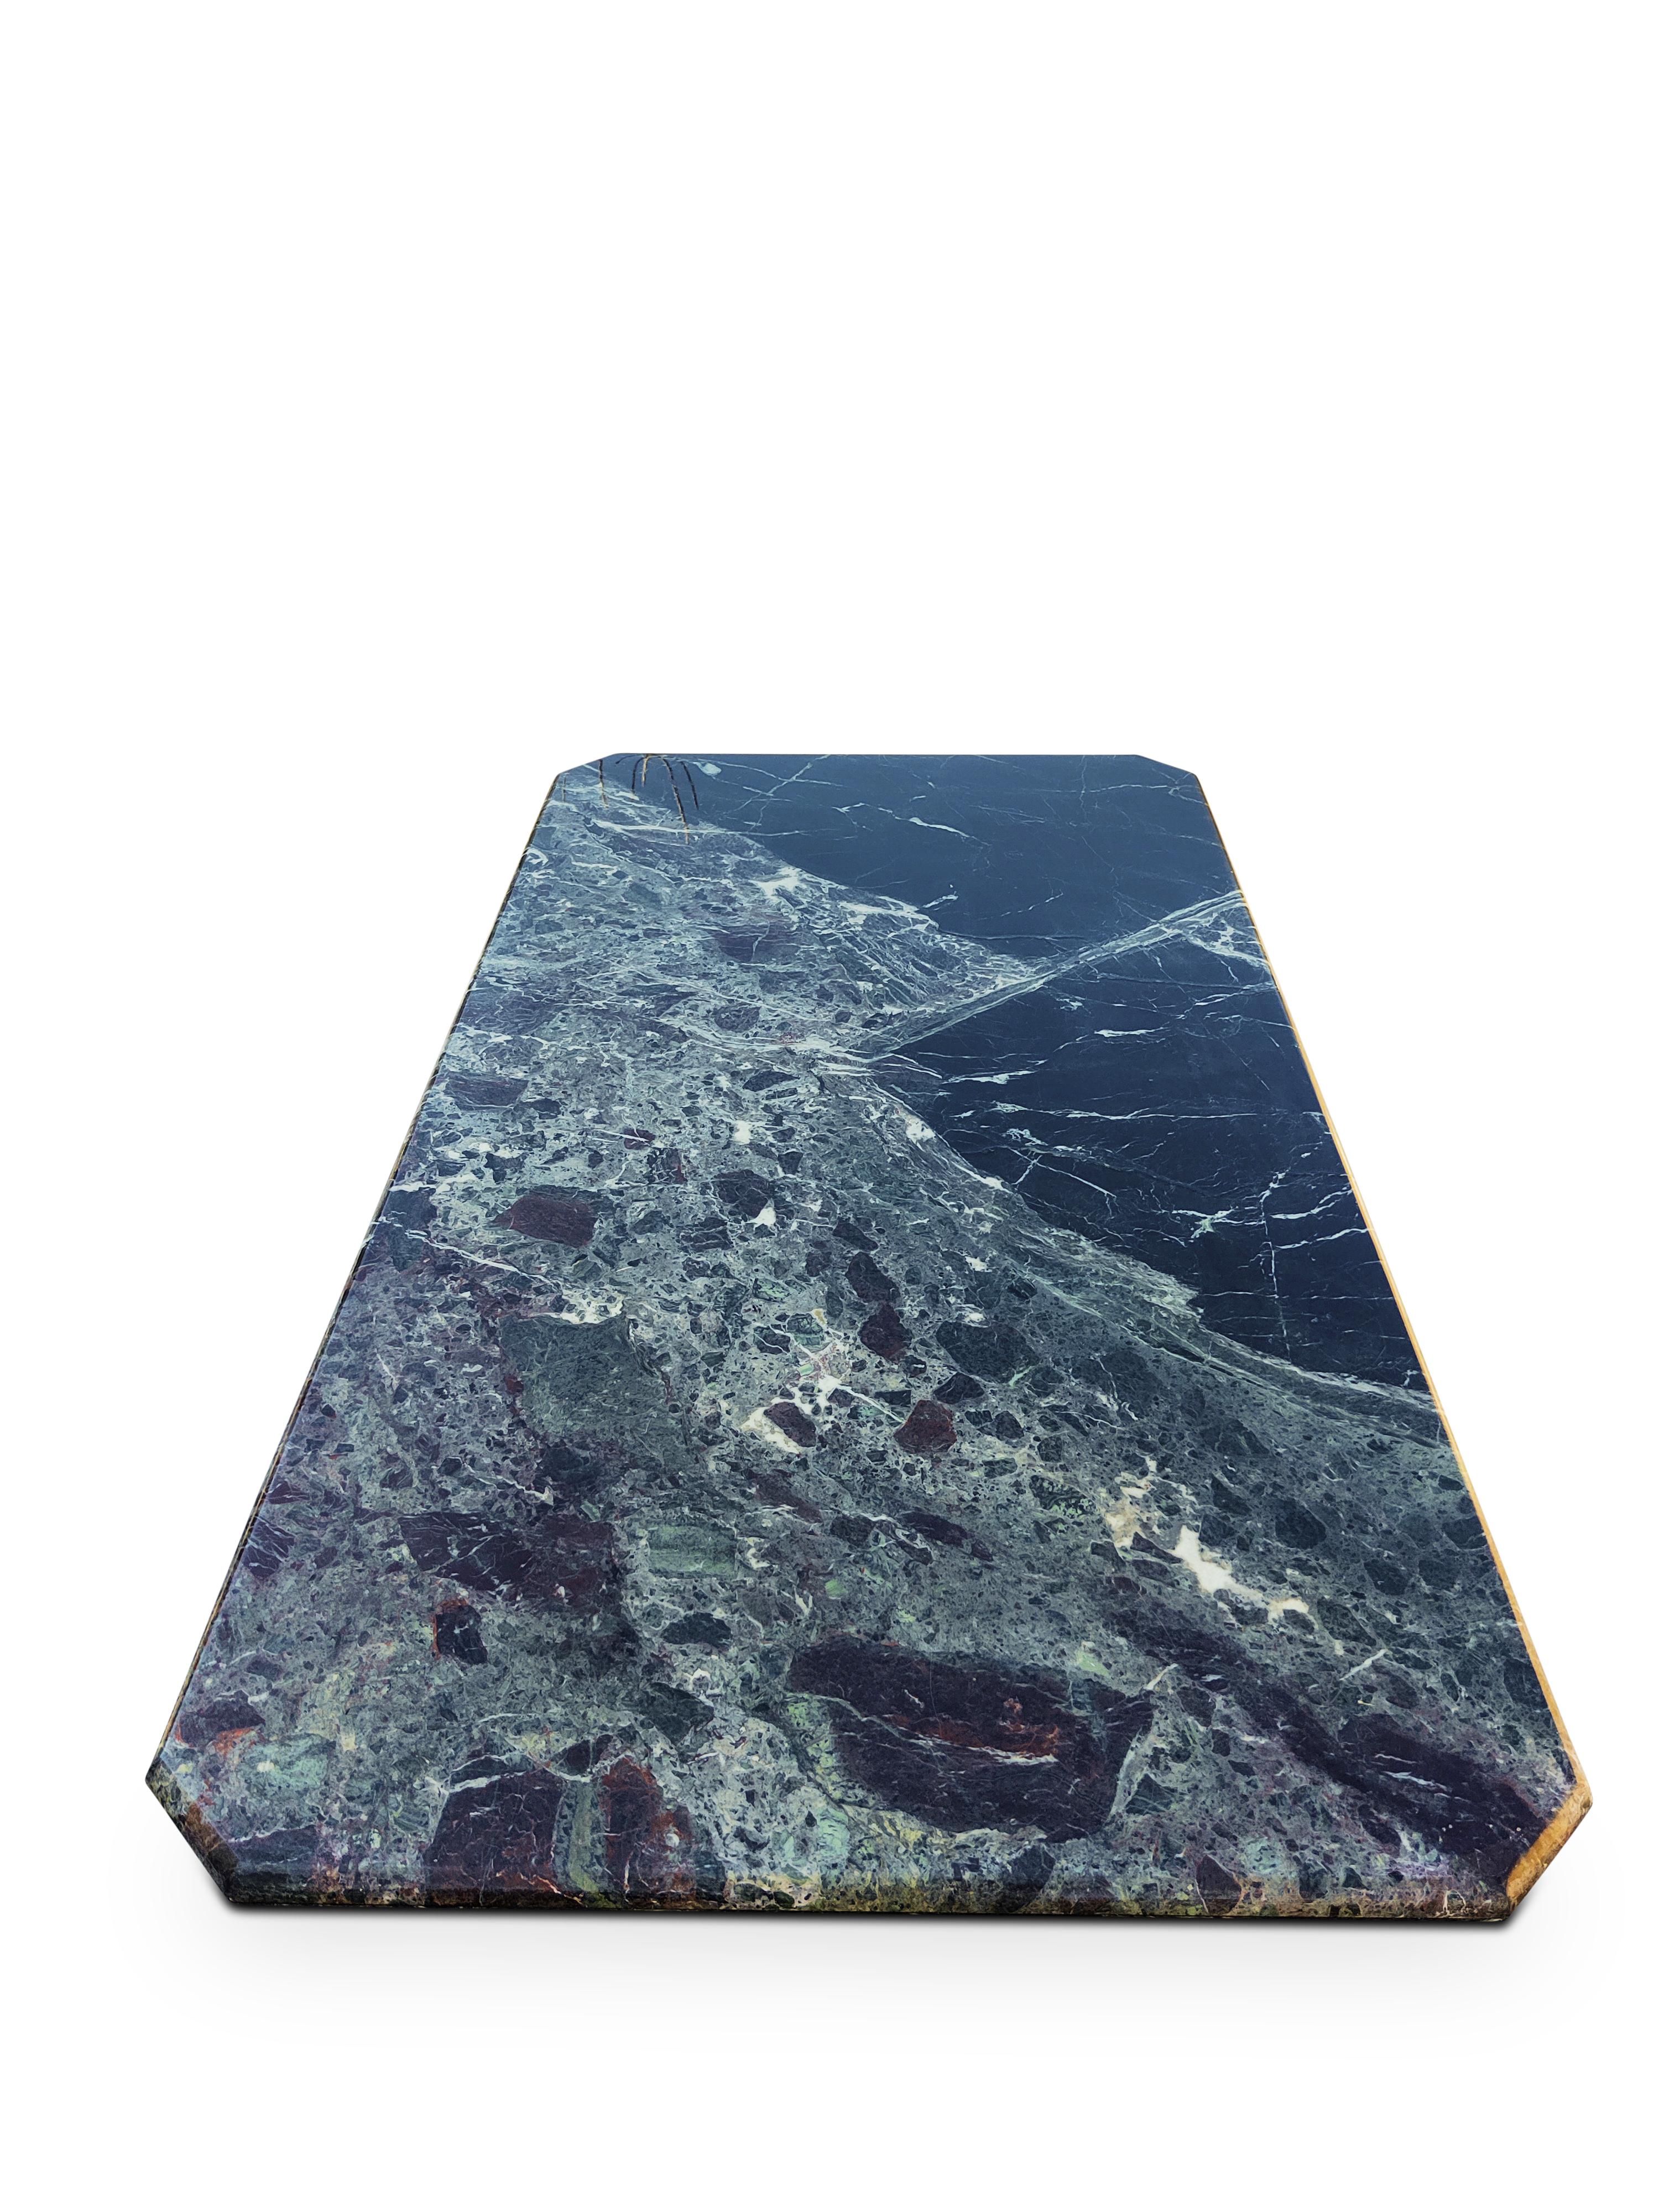 In Form und Proportionen dem renommierten Hersteller Stone International ähnlich, zeichnet sich dieser Tisch durch seine exquisite Marmorierung und Maserung aus. Dieser Marmor besteht hauptsächlich aus dramatischen schwarzen und dunkelgrünen Feldern